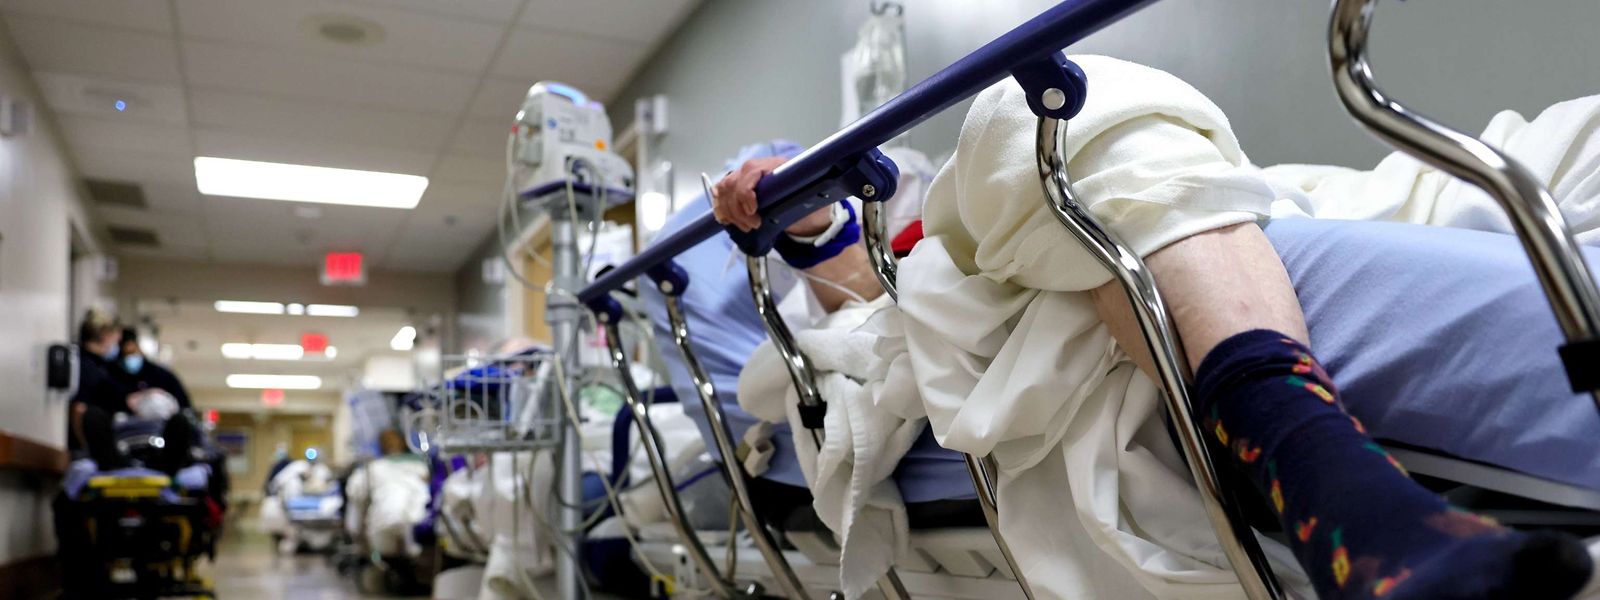 Actuellement, les hôpitaux du Luxembourg accueillent toujours 162 malades du covid. Un chiffre qui a pu monter à 251 lits occupés à la veille de Noël.